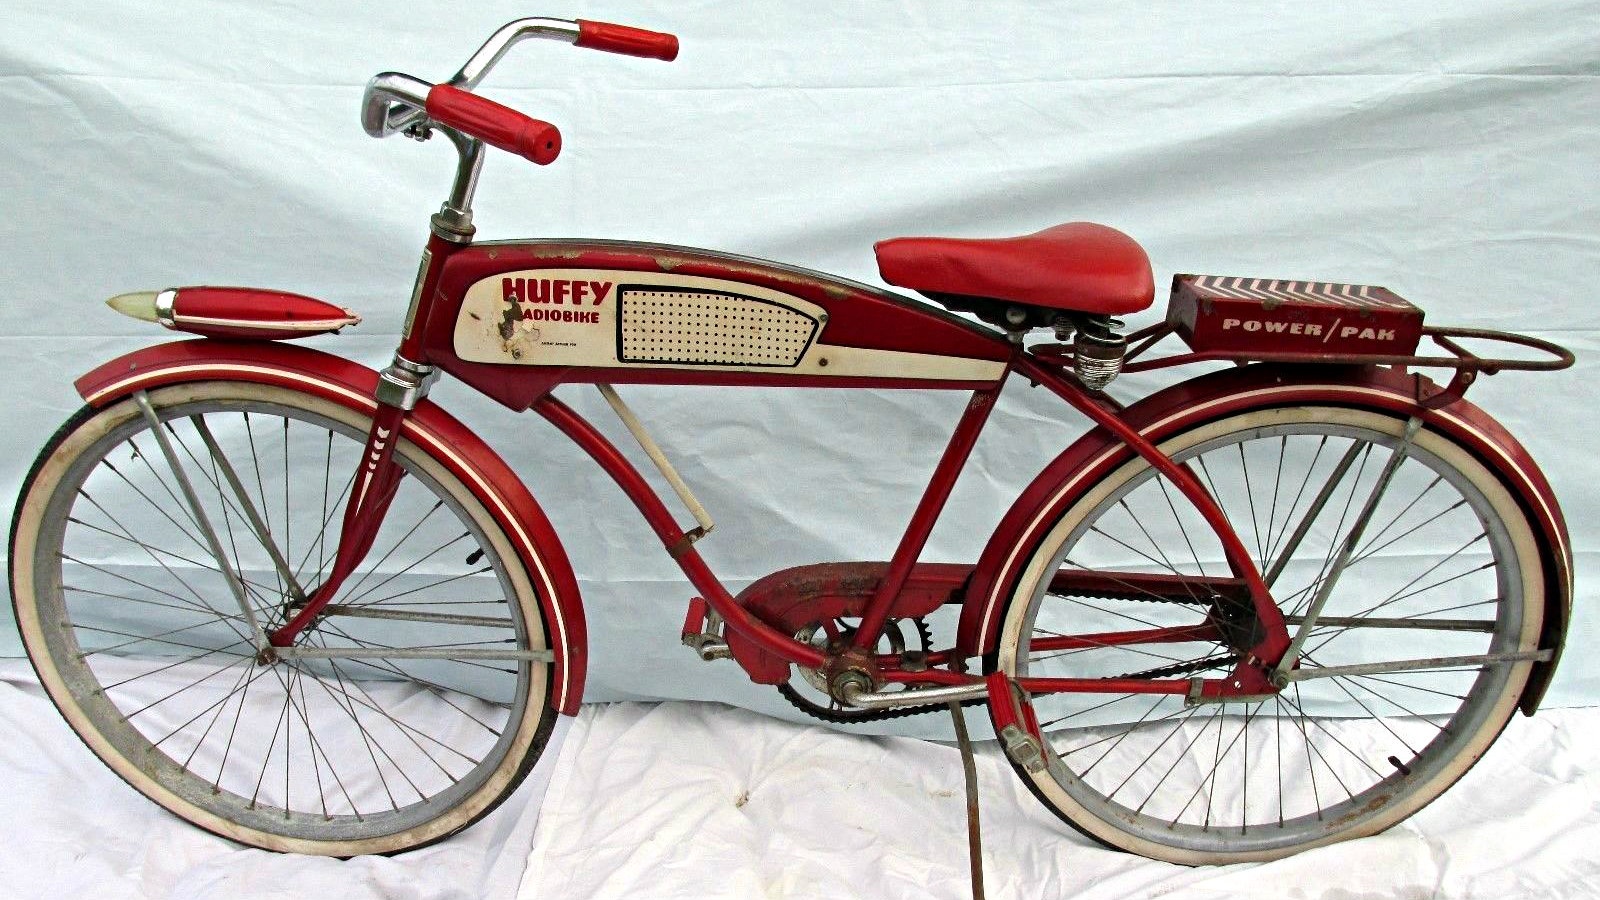 huffy-radio-bike-2-jpg.663743